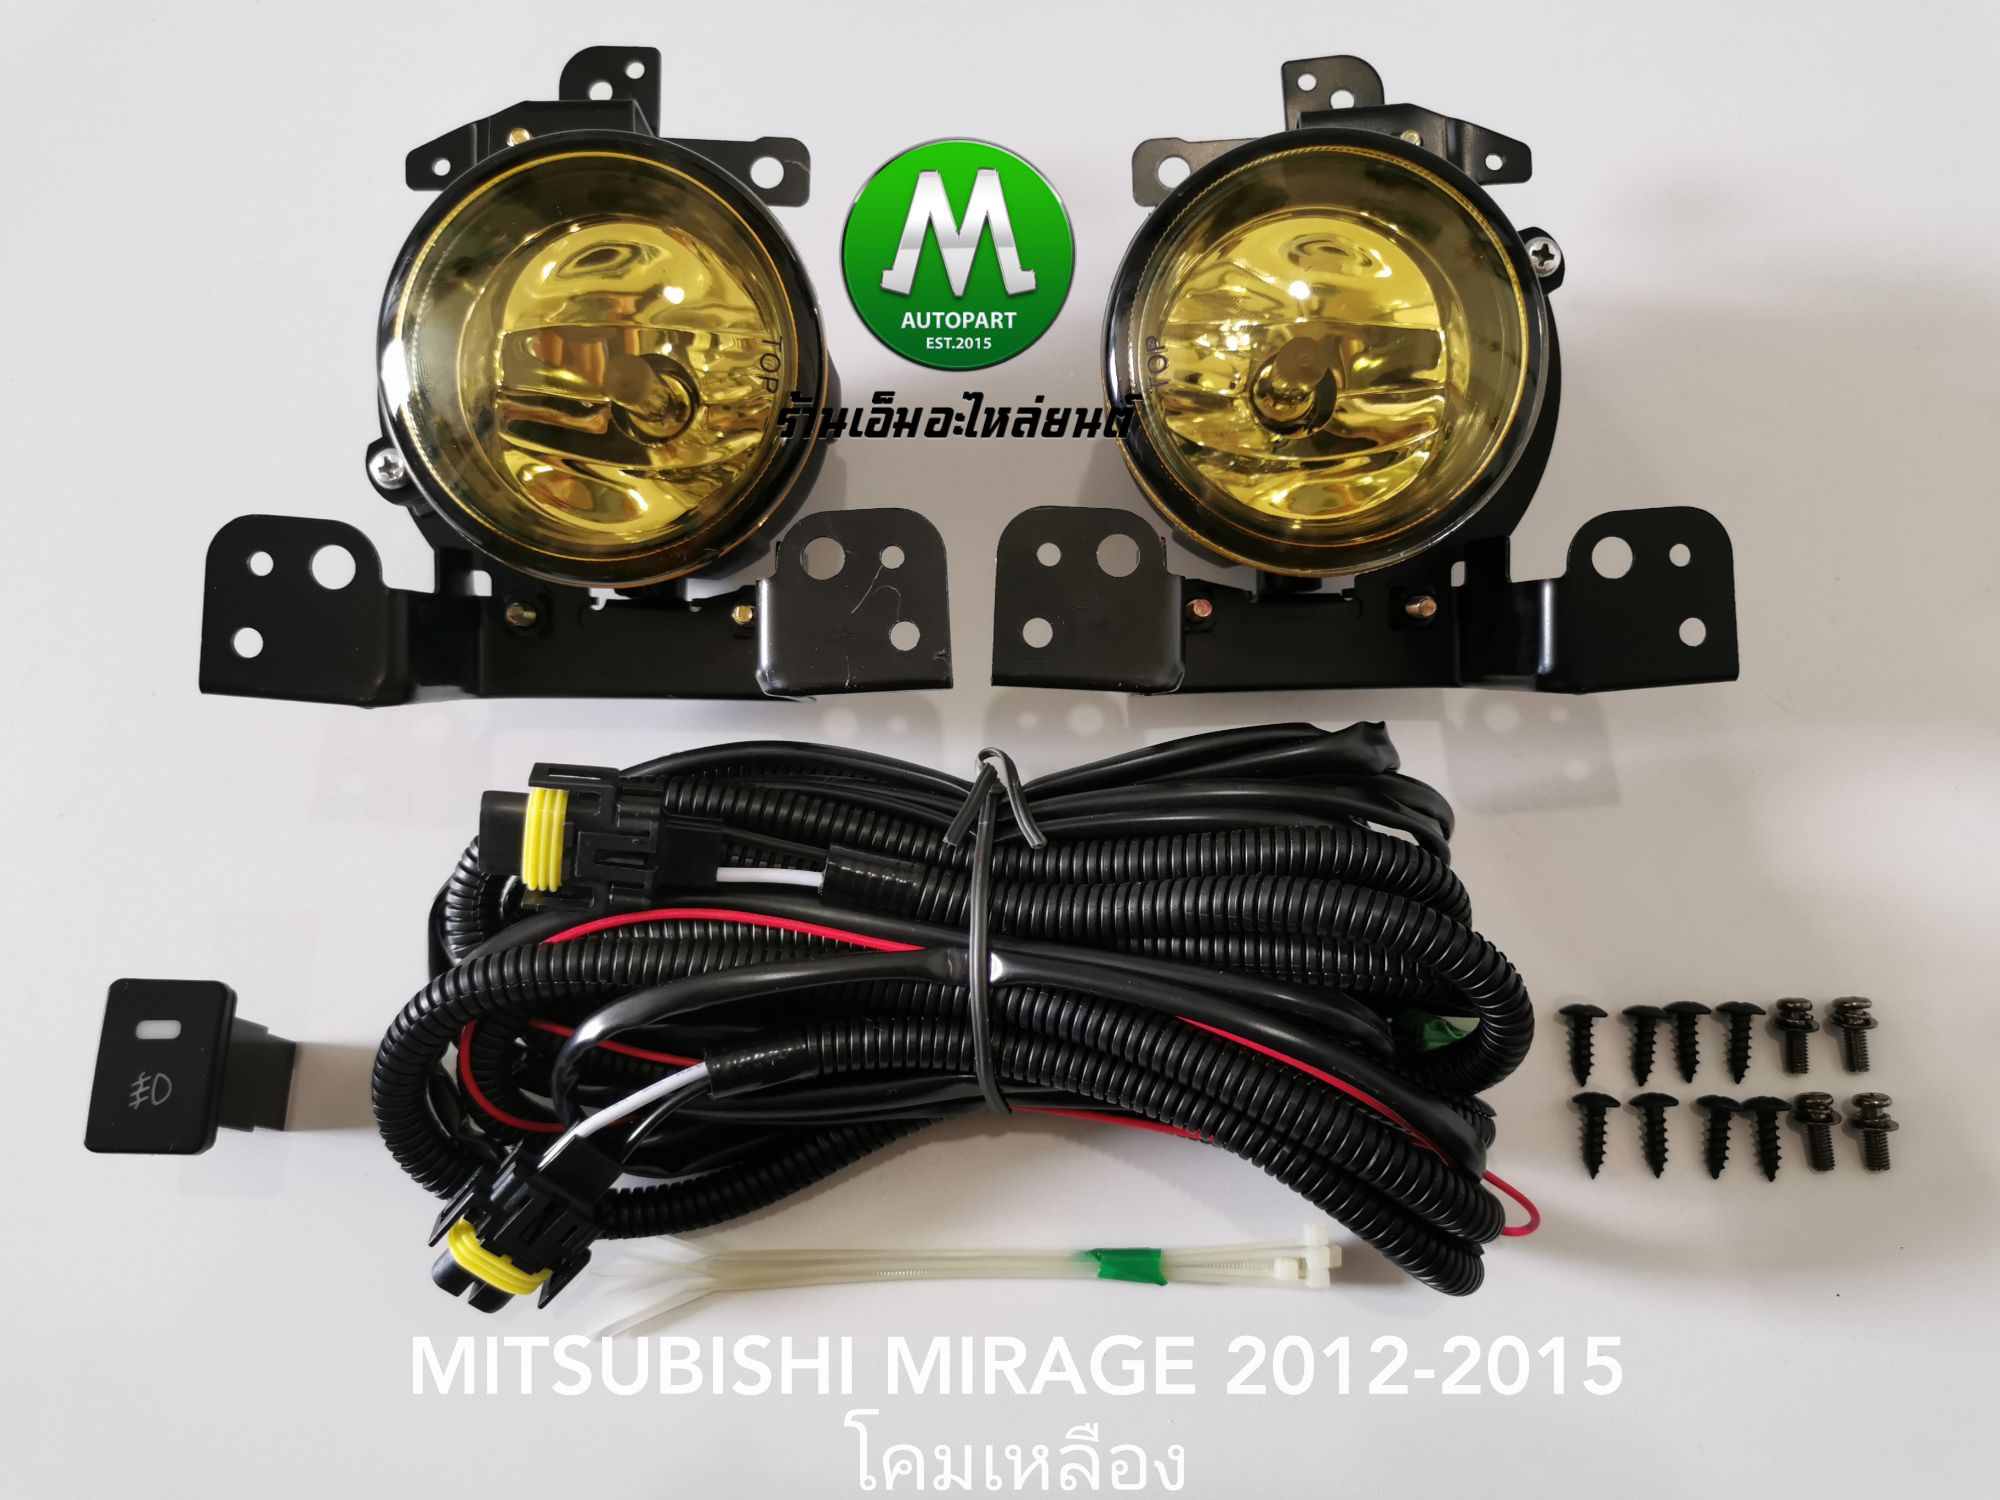 ไฟ​ตัด​หมอก​ ไฟ​สปอร์ตไลท์​ โคม​เหลือง​ MITSUBISHI​ MIRAGE​ 2012-2015​ / มิตซูบิชิ มิราจ